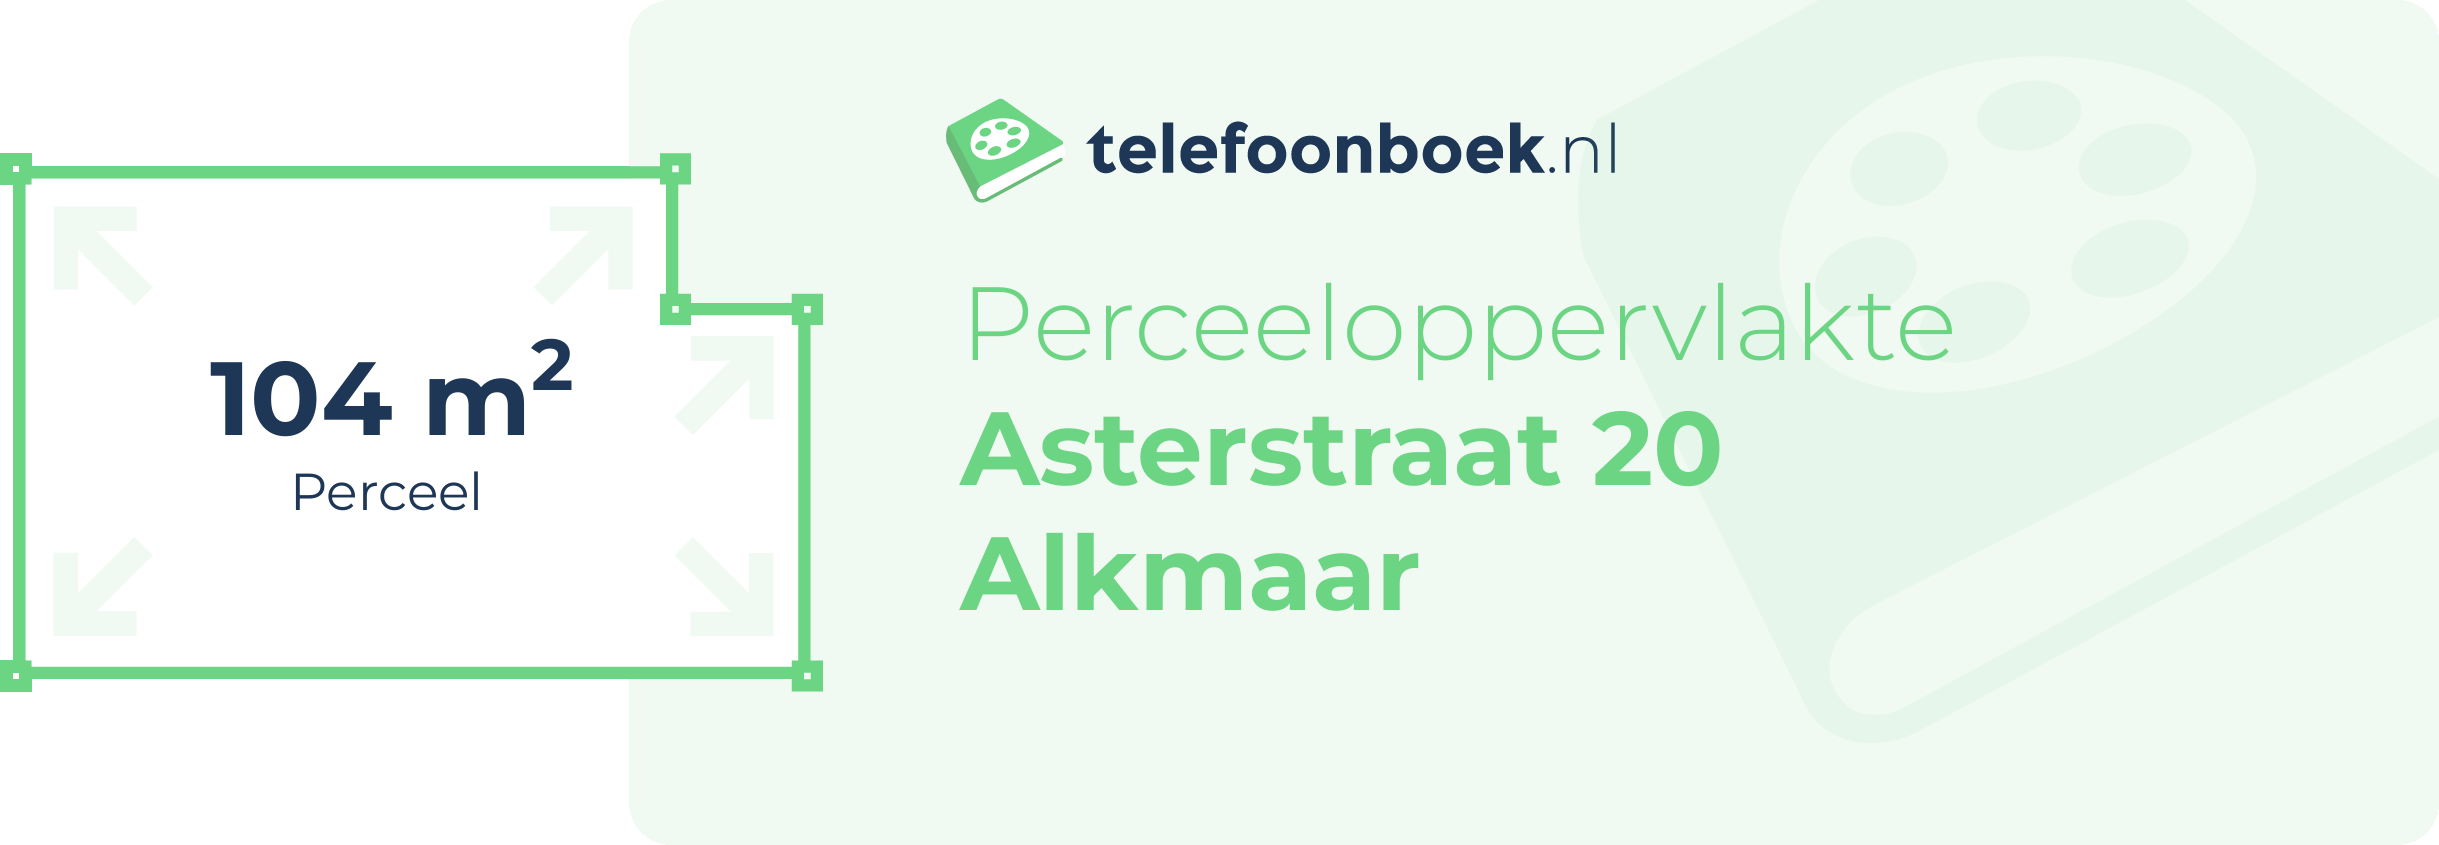 Perceeloppervlakte Asterstraat 20 Alkmaar